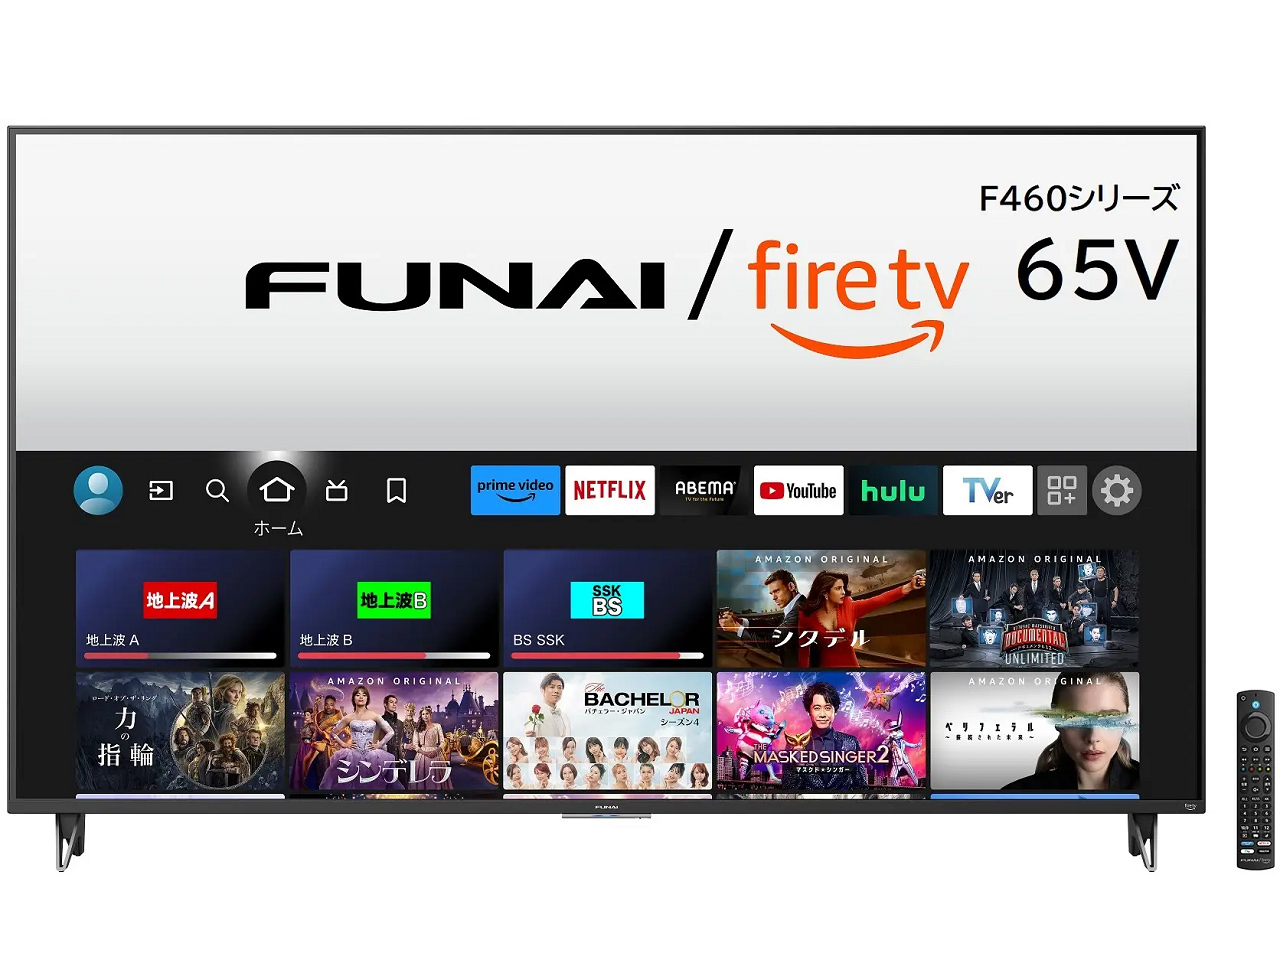 アマゾンとヤマダ、「FUNAI Fire TV」最大の65V型--ヤマダの創業50周年 